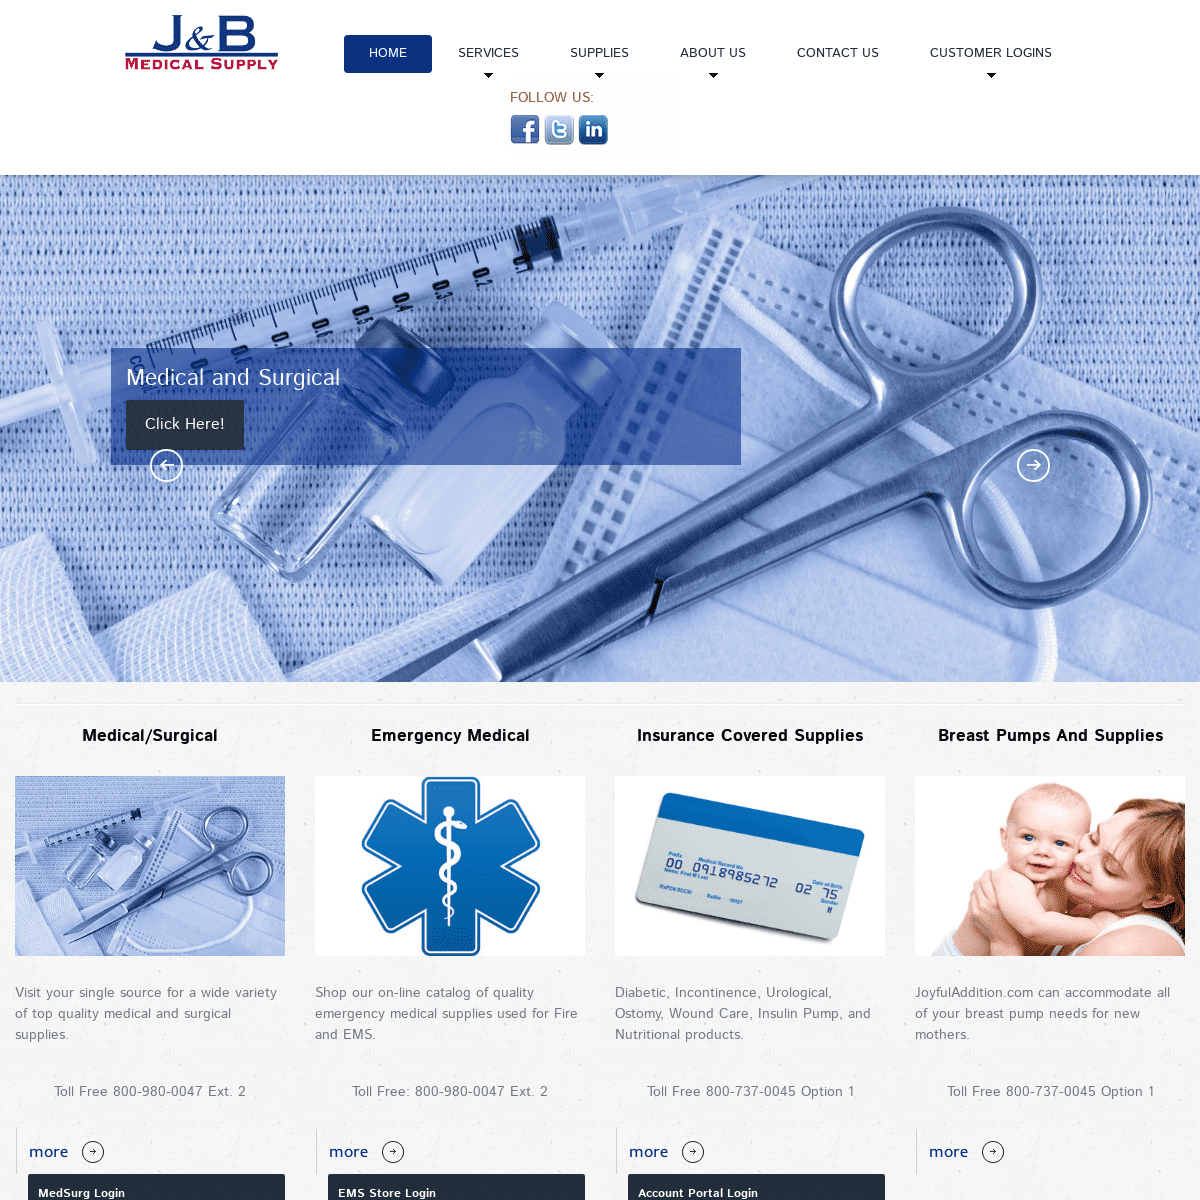 Medical and Surgery Supplies | J&B Medical Supply